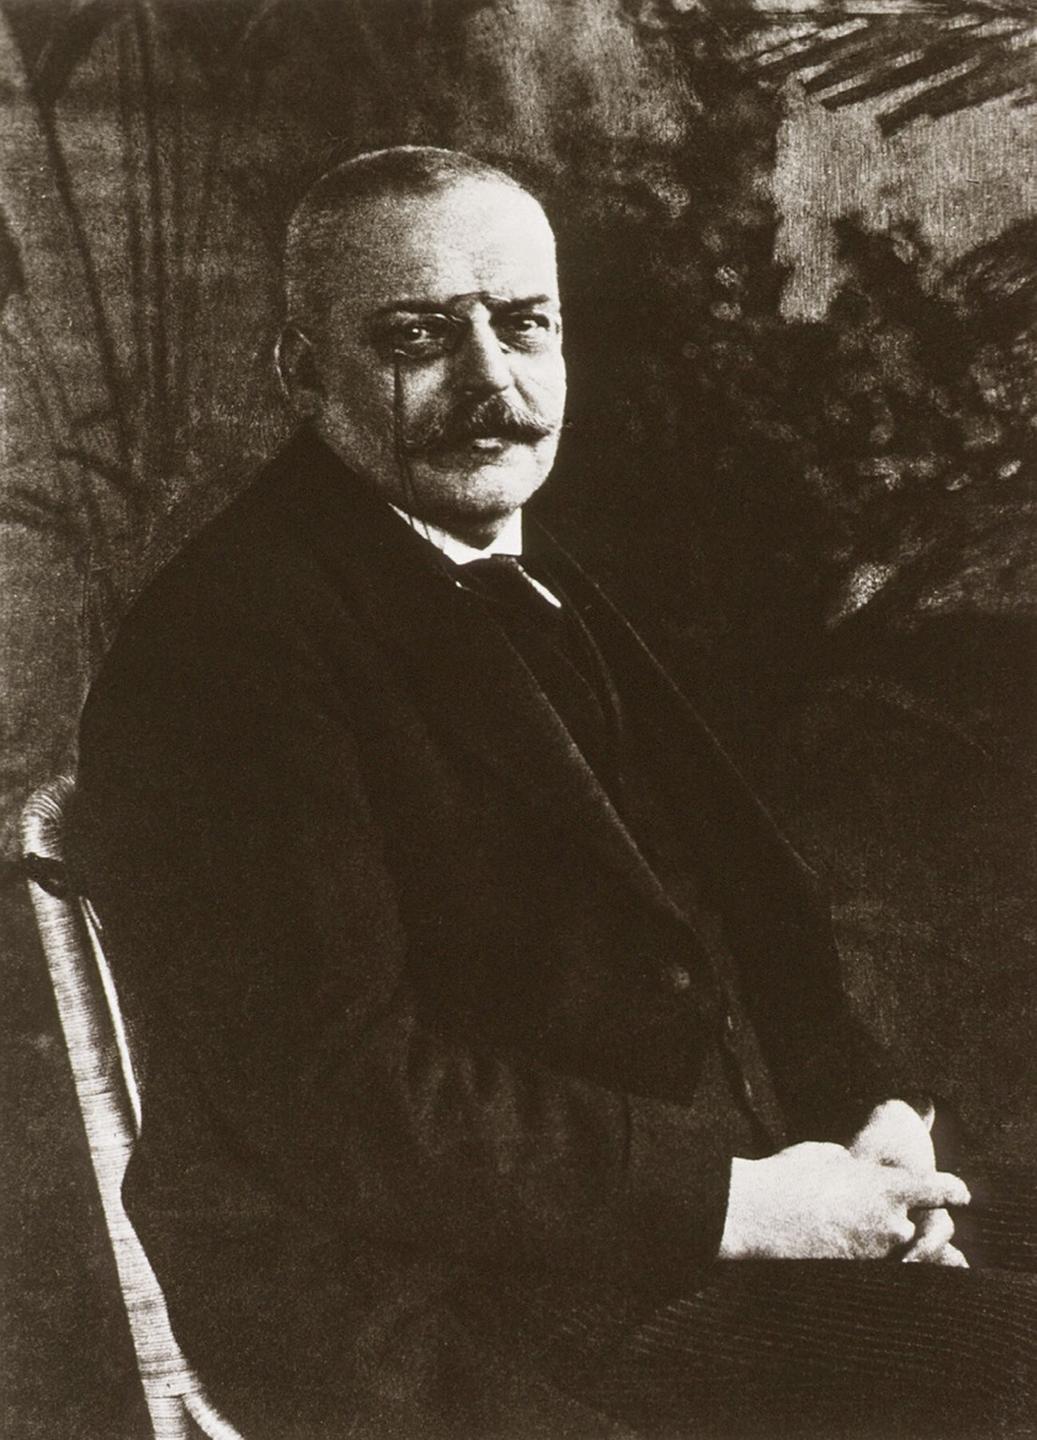 Ein undatiertes Schwarz-Weiß-Foto von Alois Alzheimer. Ein älterer Herr mit Brille und im Anzug sitzt auf einem Stuhl. 